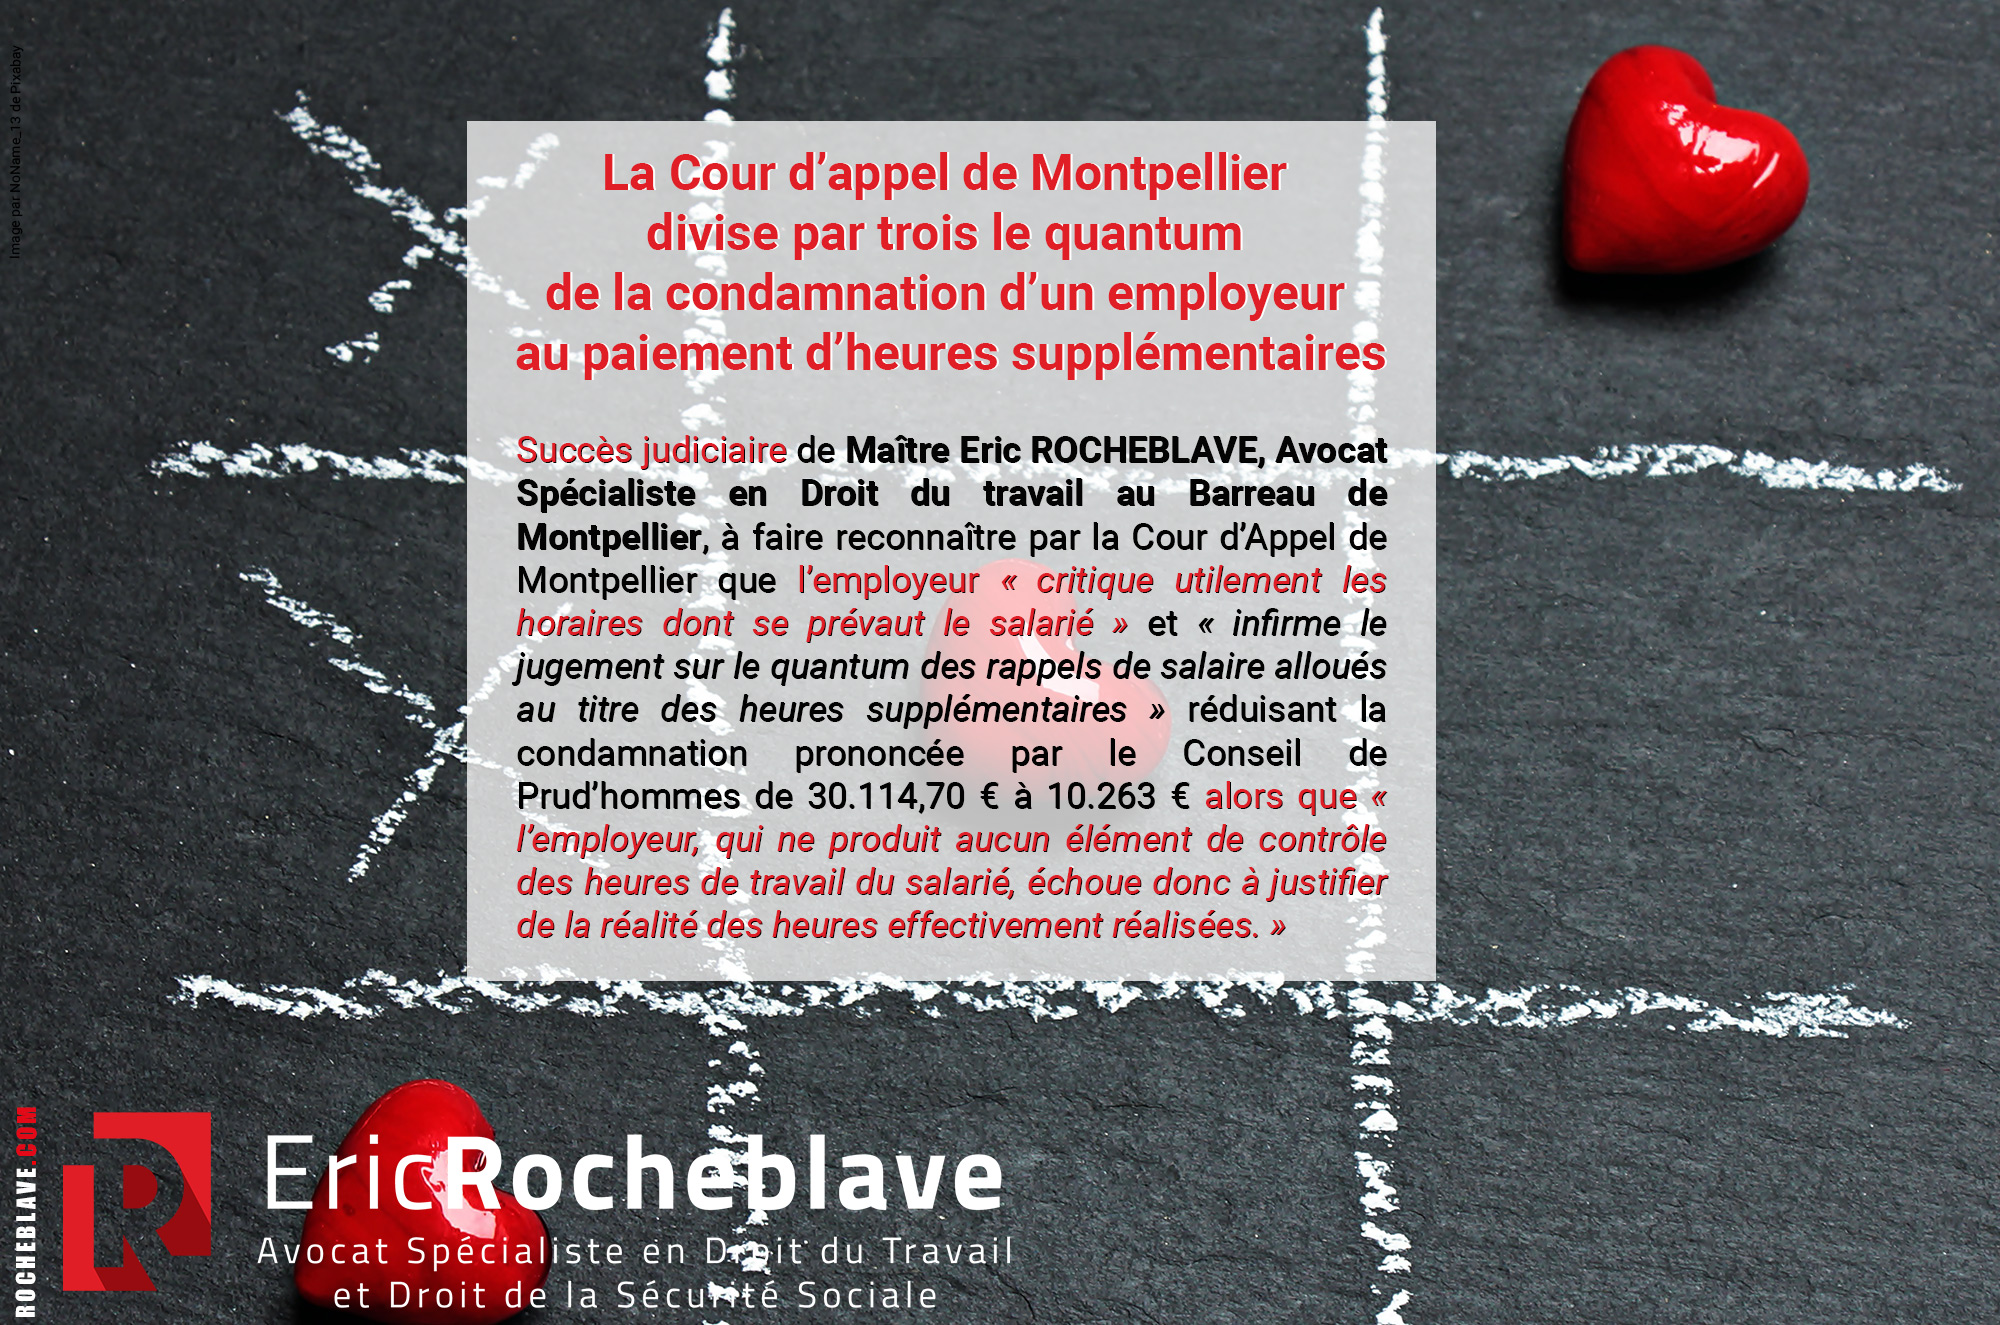 La Cour d’appel de Montpellier divise par trois le quantum de la condamnation d’un employeur au paiement d’heures supplémentaires